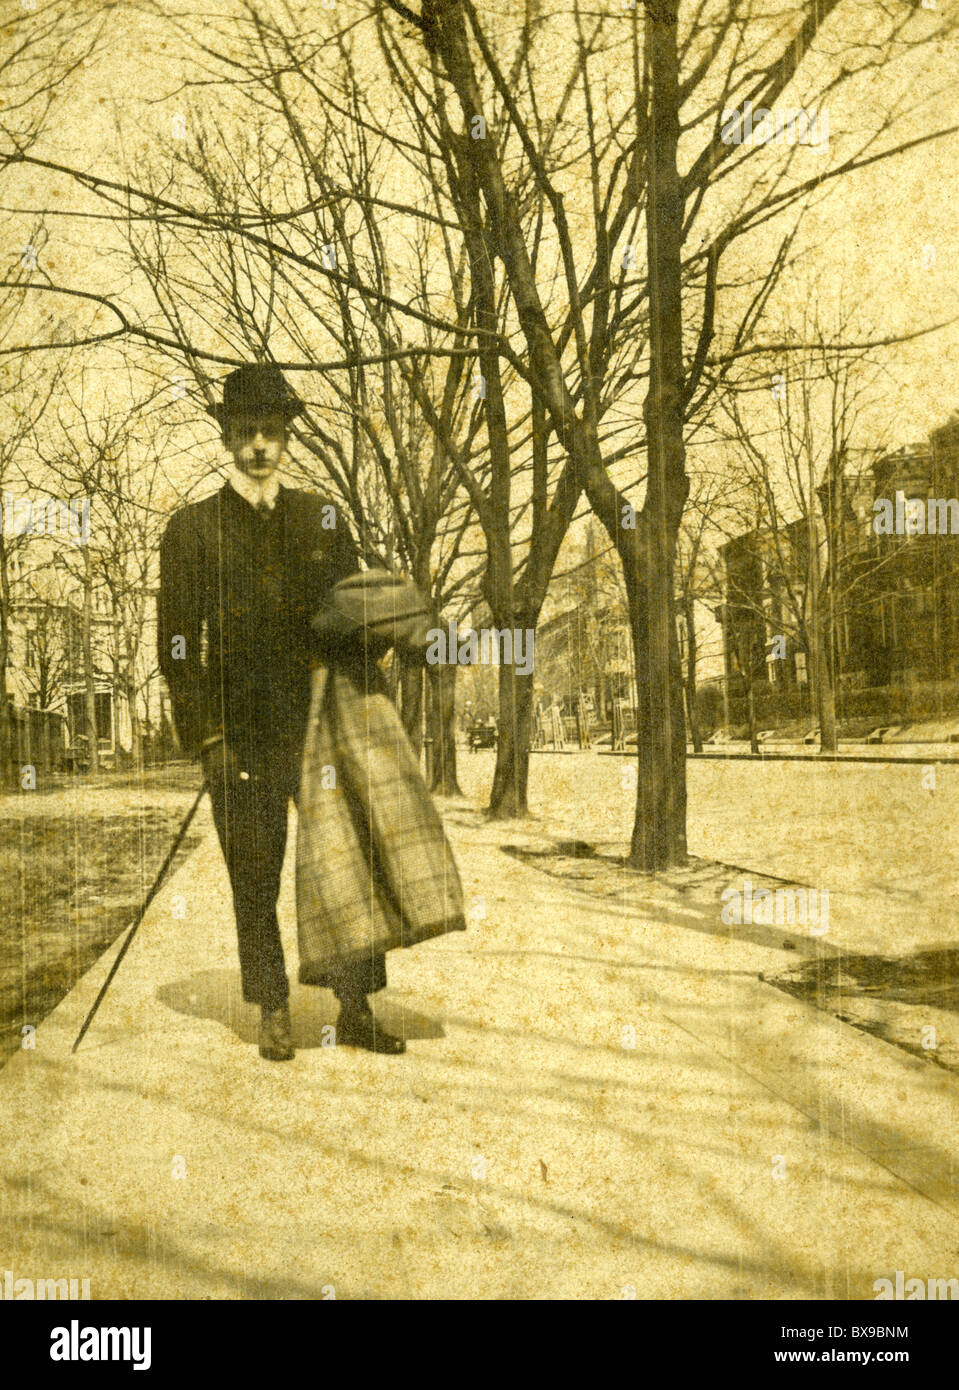 L'homme vêtu de noir hat fashion marche sur trottoir au cours de années 1890 en noir et blanc Americana Banque D'Images